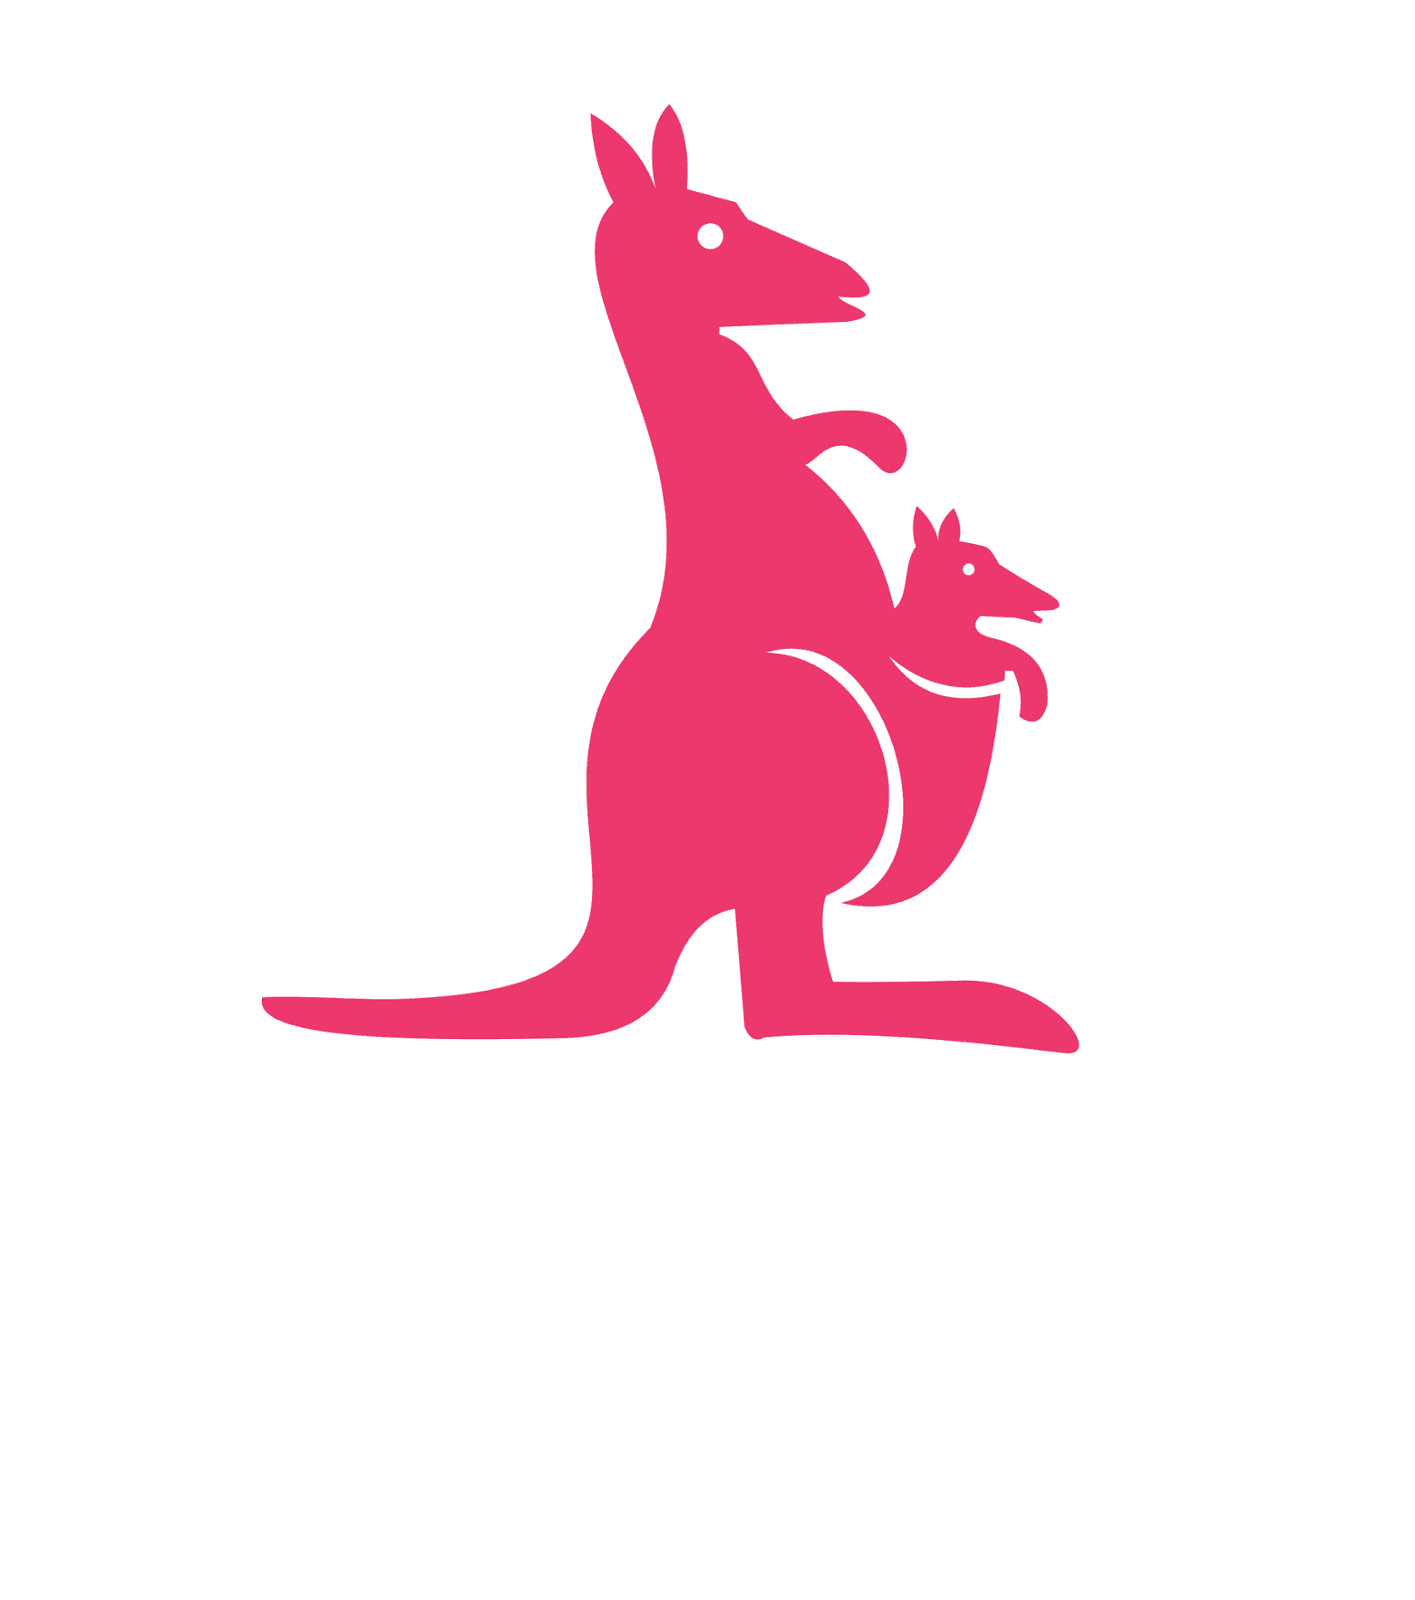 www.taxshe.com